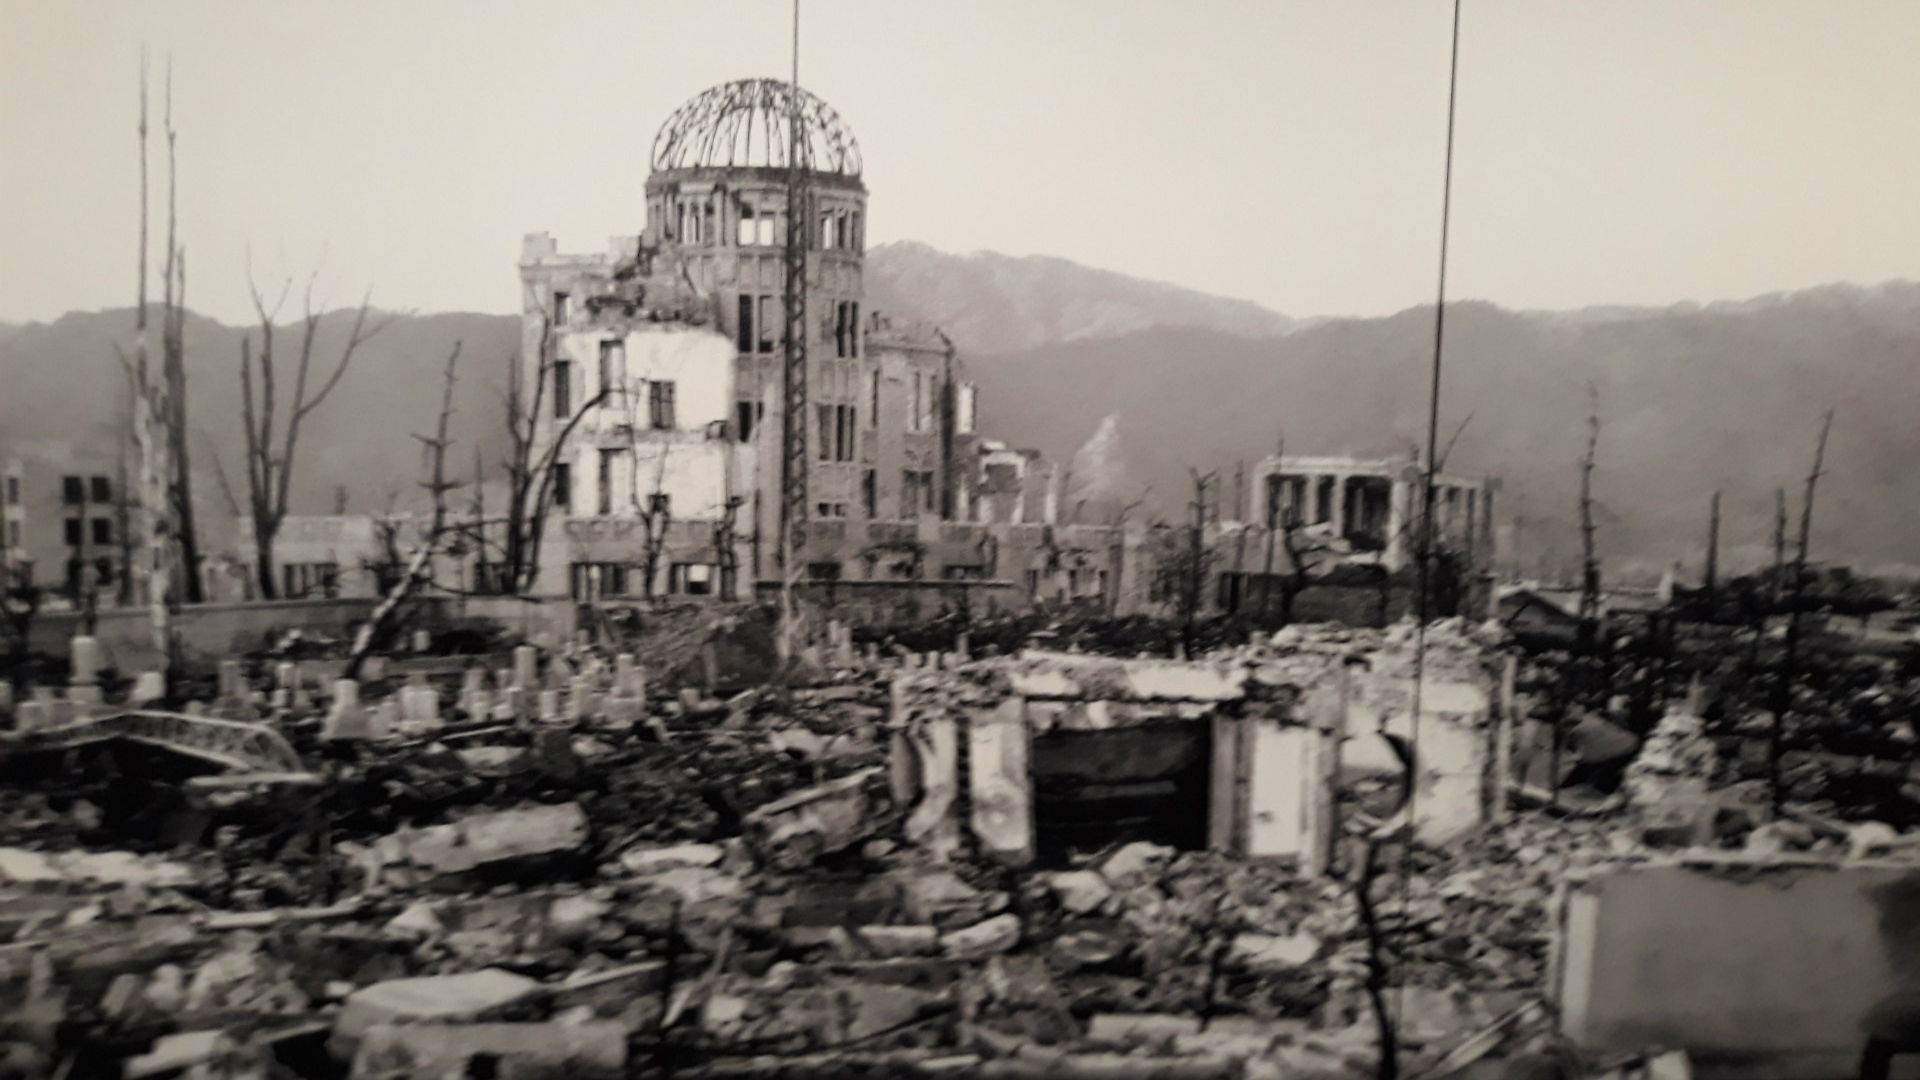 El edificio conocido como Cúpula Genbaku luego de la explosión atómica. En medio de la devastación, yacía otro drama: de los 200 médicos registrados en Hiroshima, habían sobrevivido sólo 20. Y de las 1680 enfermeras que podrían haber ayudado a las decenas de miles de heridos, sólo habían sobrevivido 150 (Getty Images)